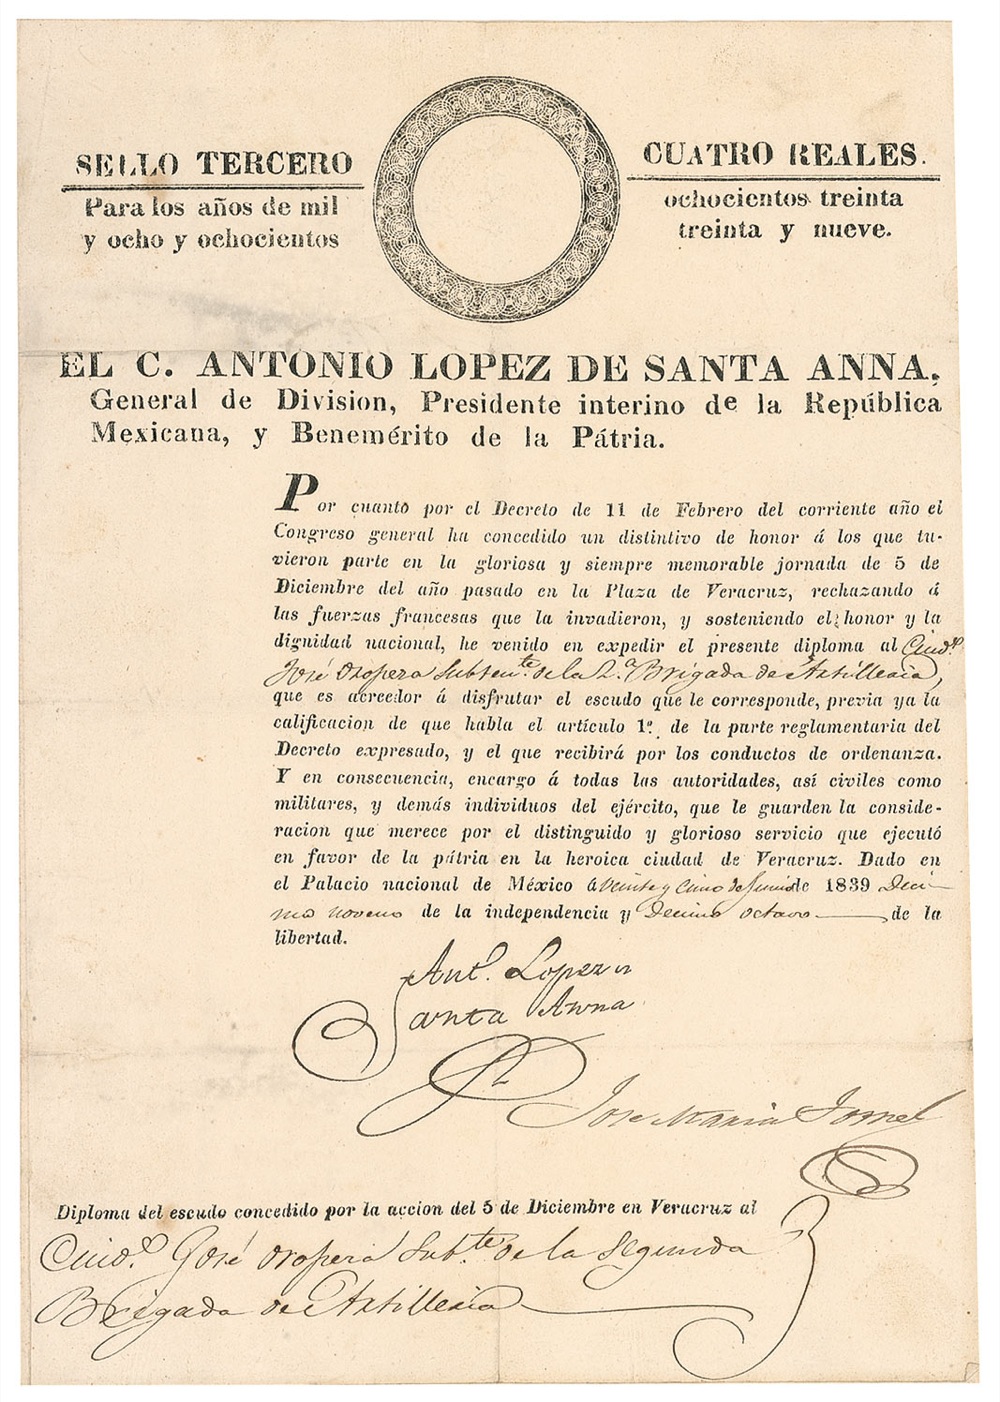 Lot #130 Antonio Lopez de Santa Anna